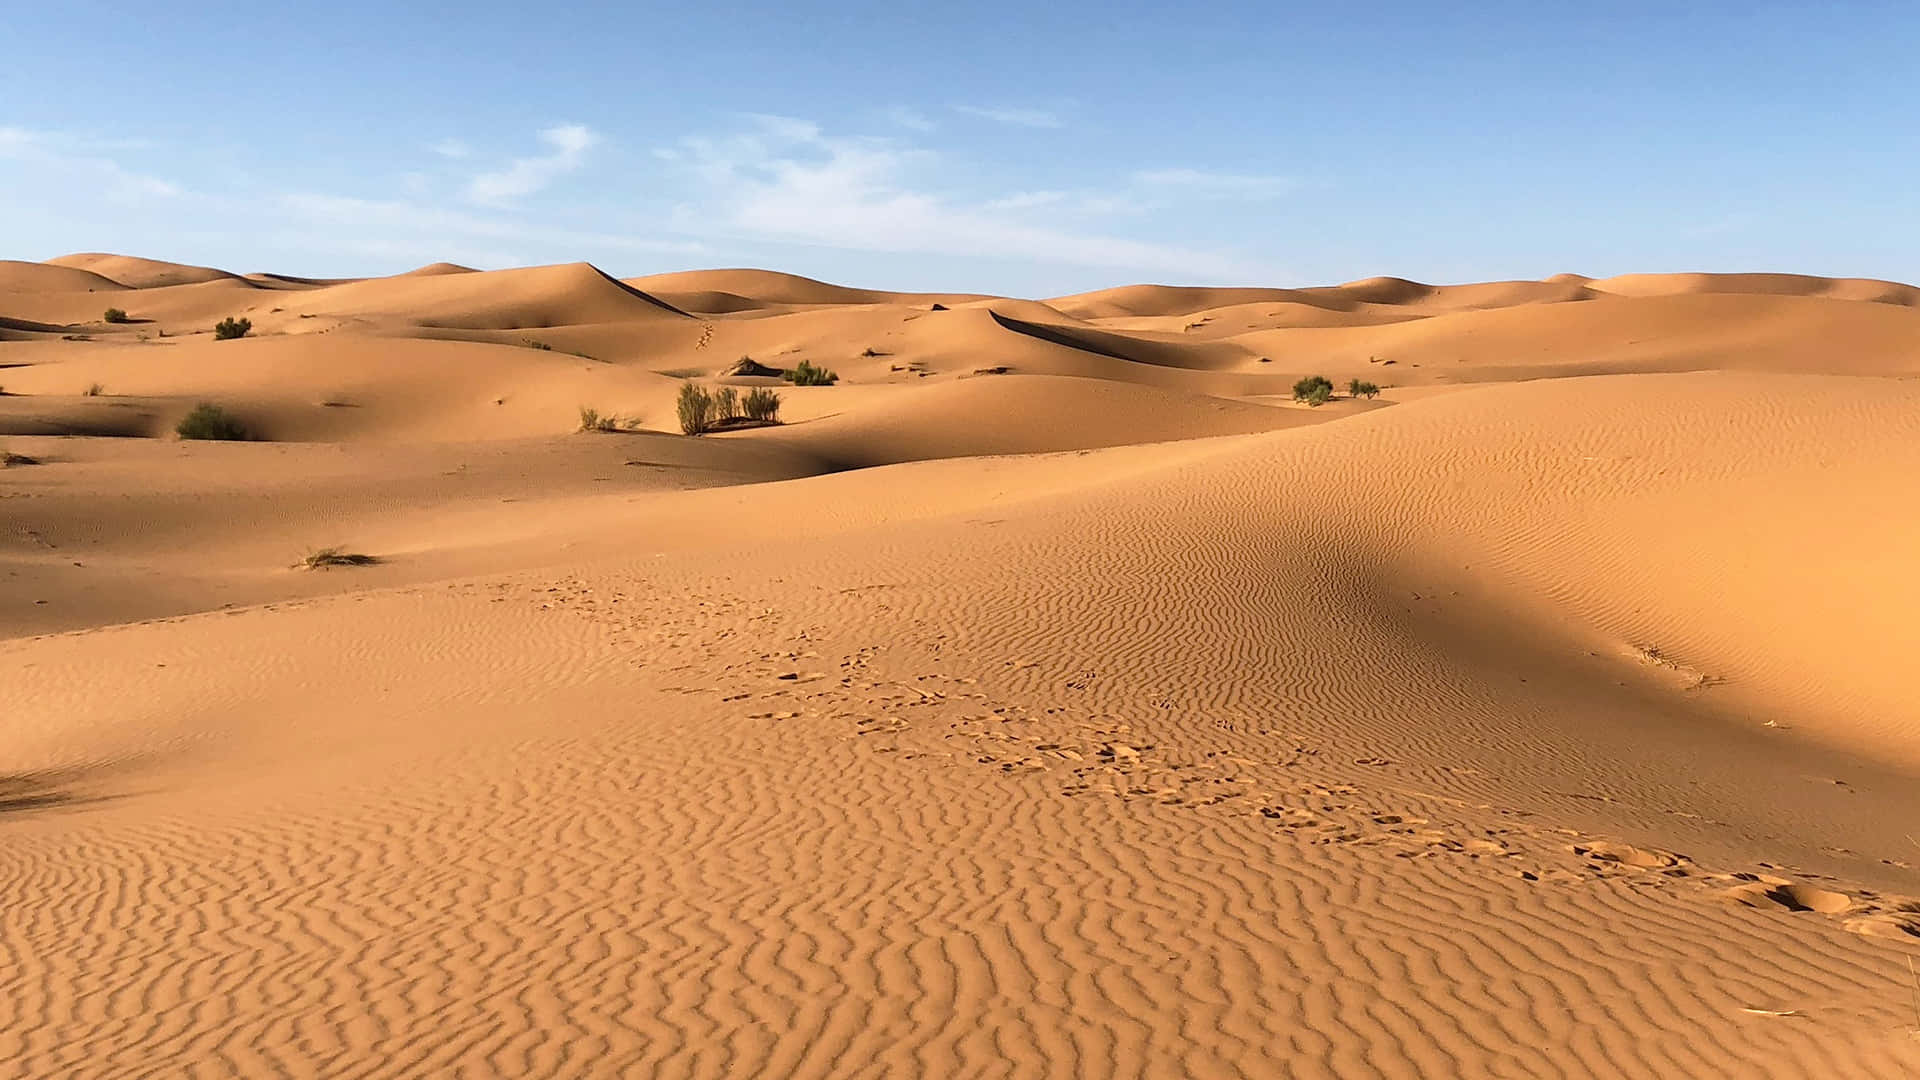 Standing tall in the unforgiving desert